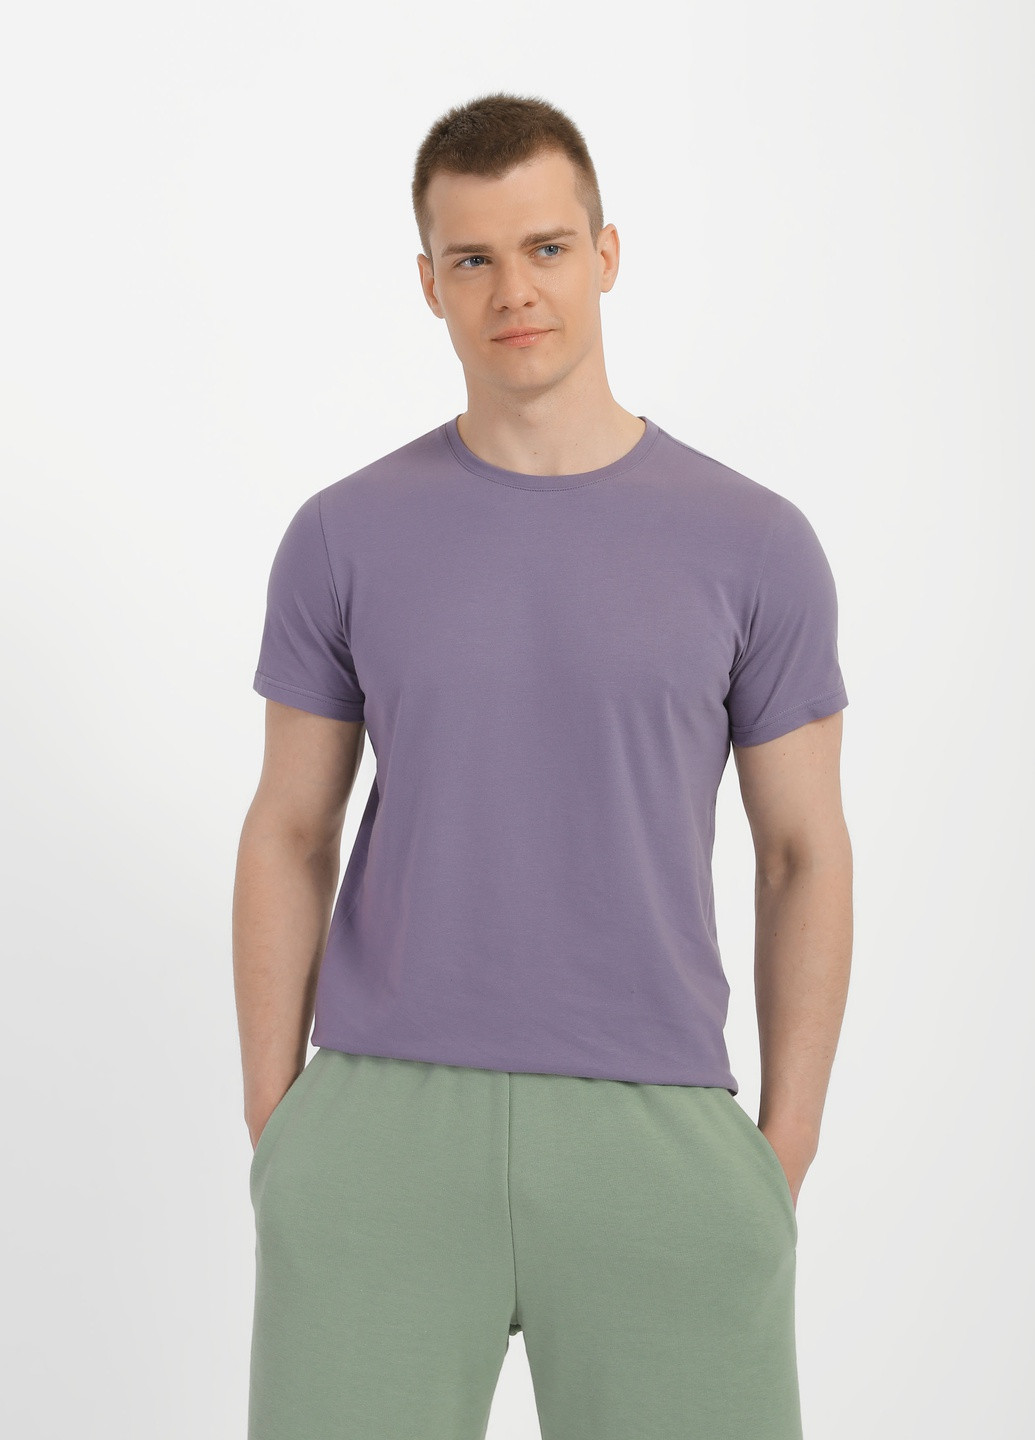 Сіра футболка для чоловіків з коротким рукавом Роза